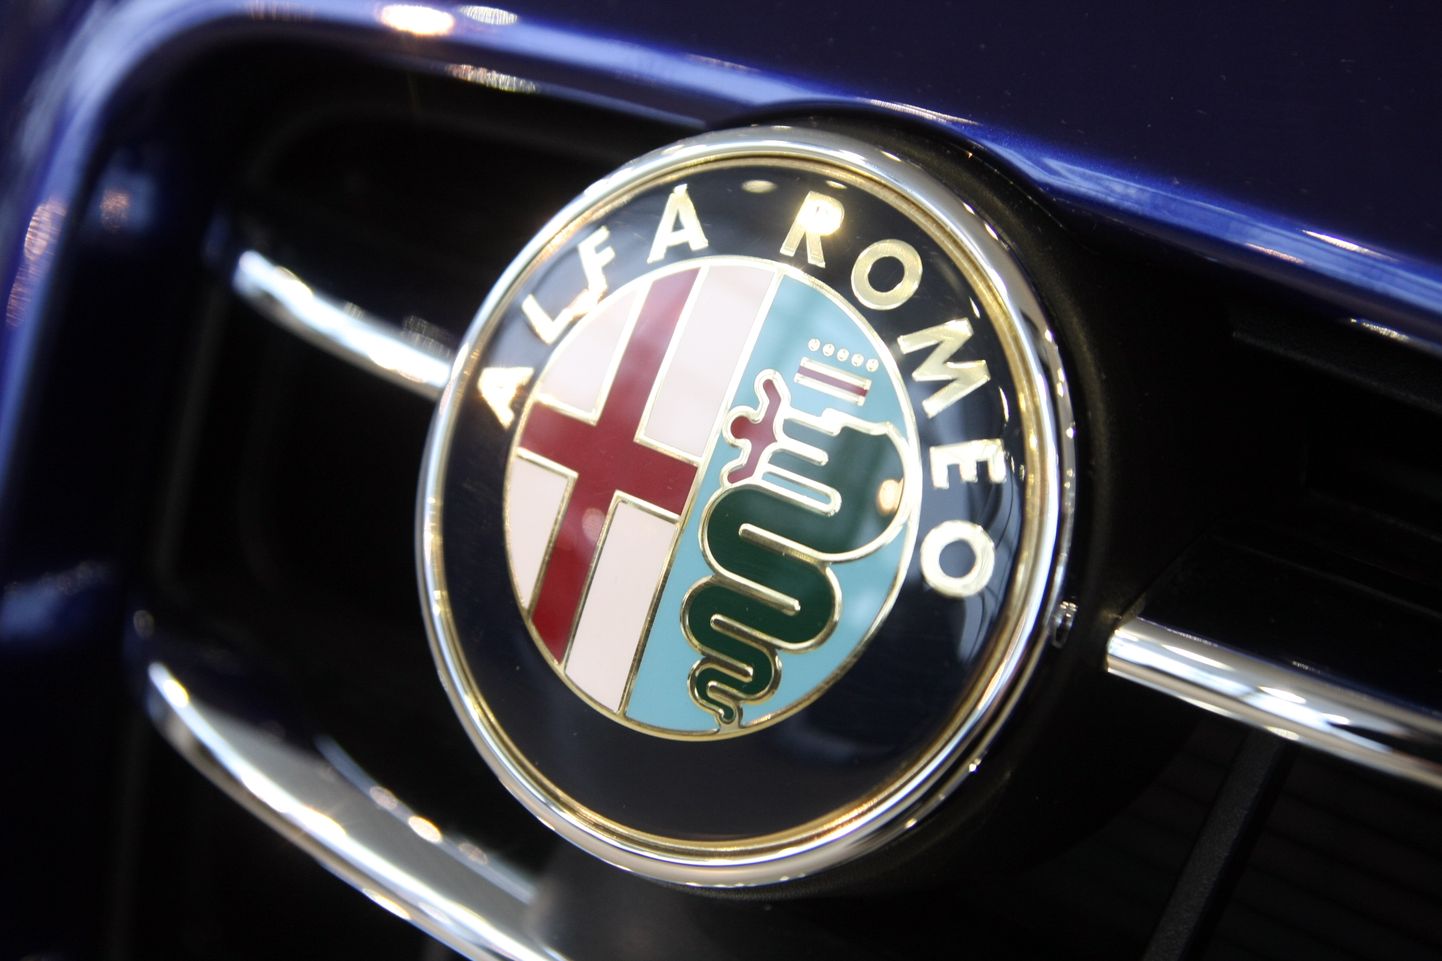 Automašīnas ''Alfa Romeo'' firmas zīme.